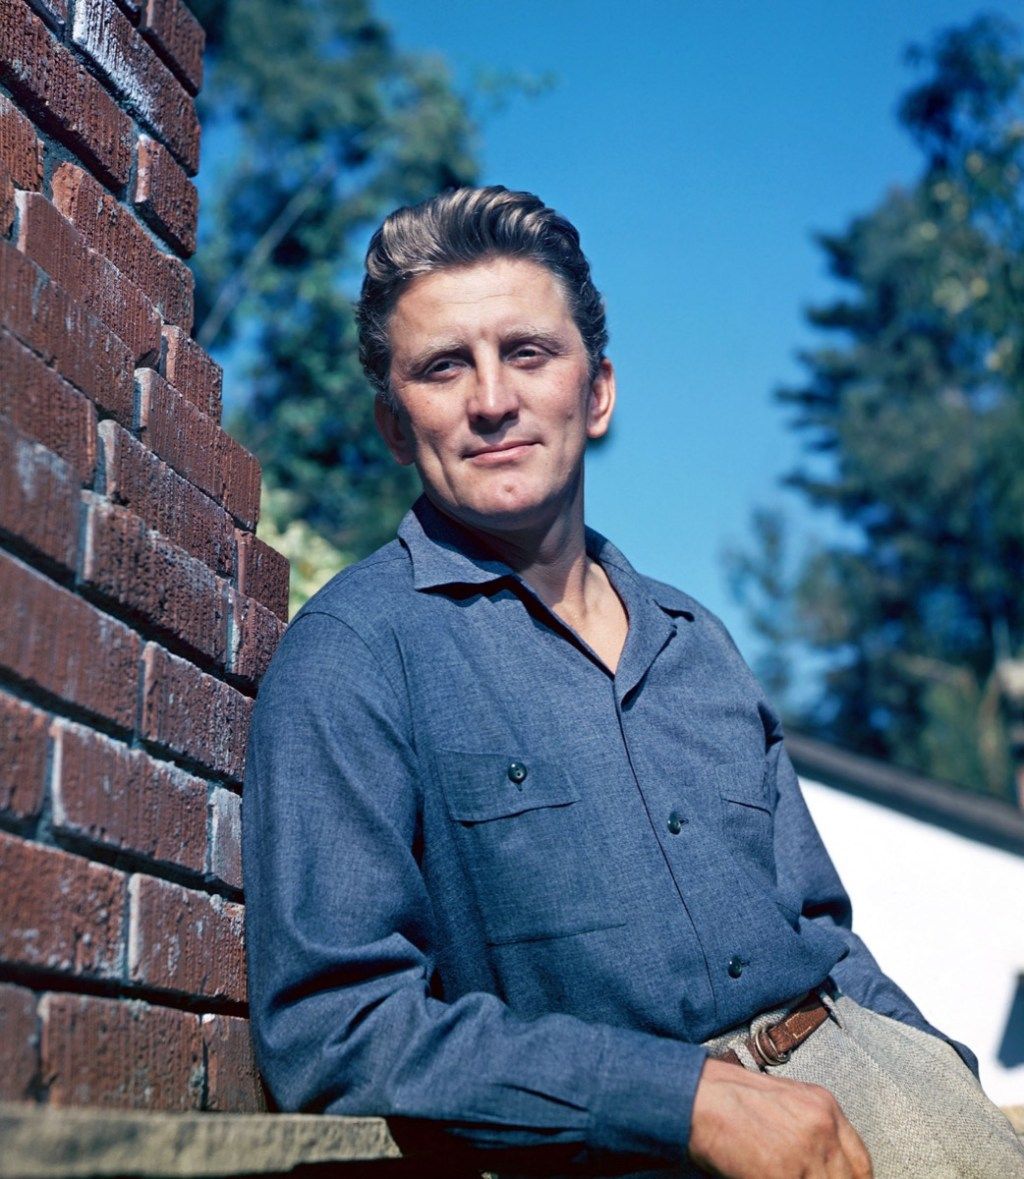 DAHYMD KIRK DOUGLAS Yhdysvaltain elokuvanäyttelijä noin 1950